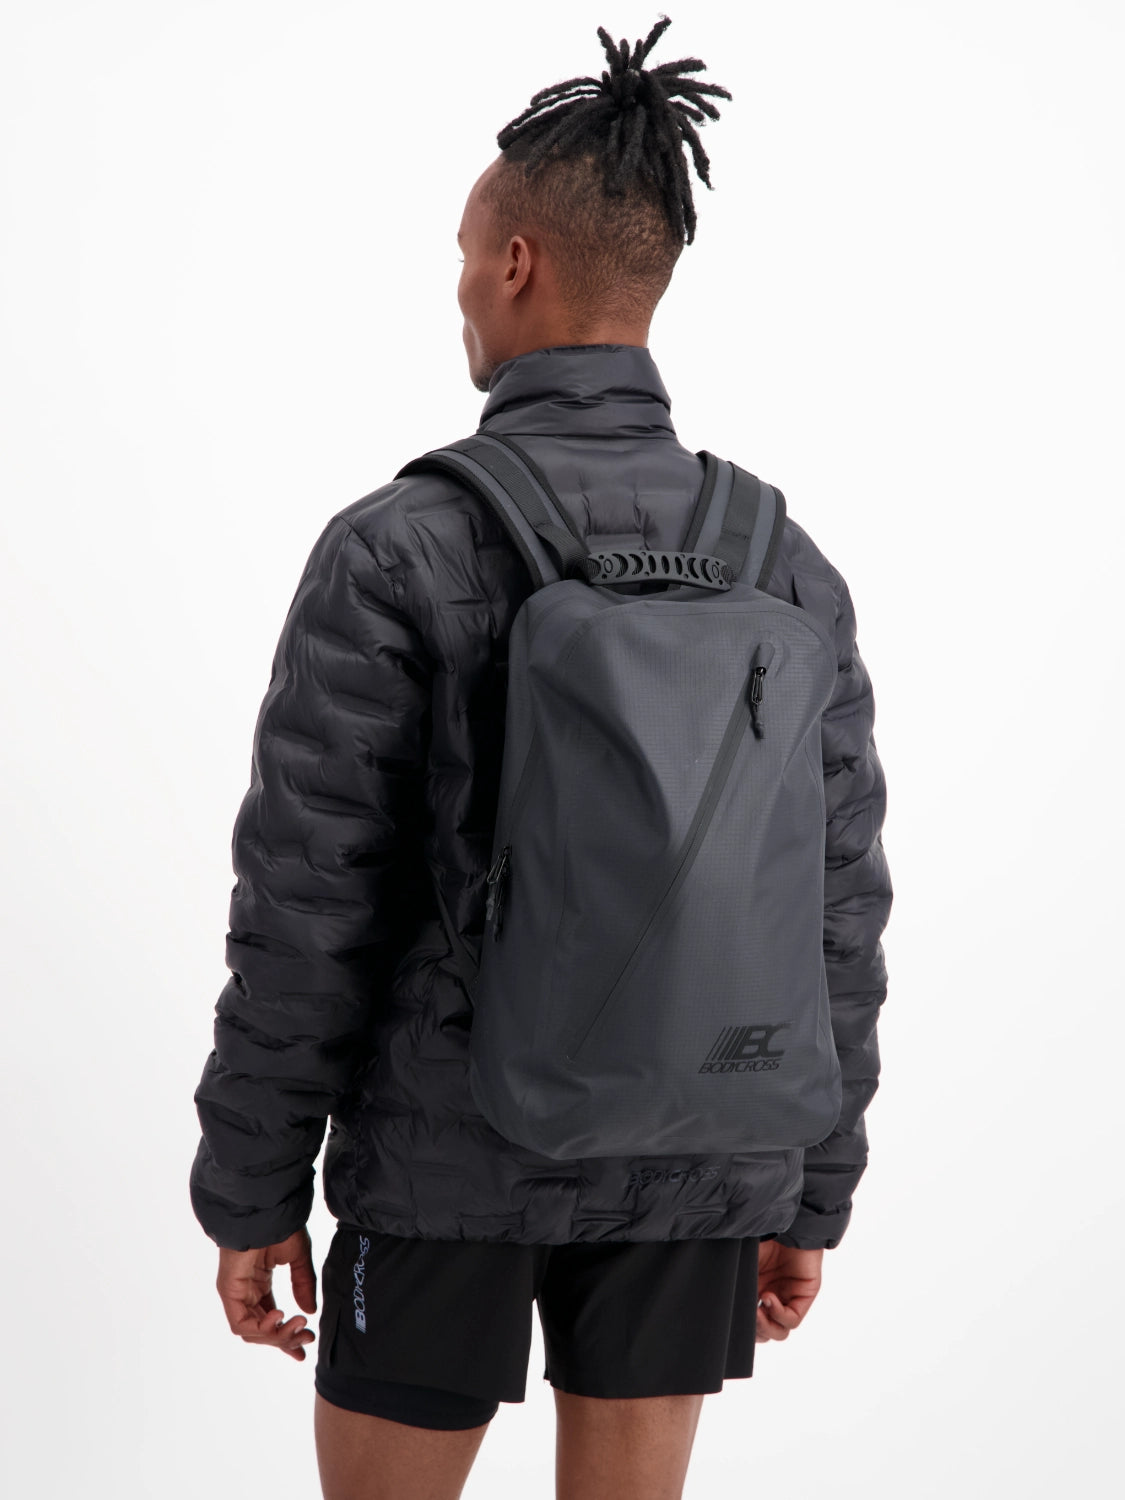 KEITH 26-litre waterproof backpack